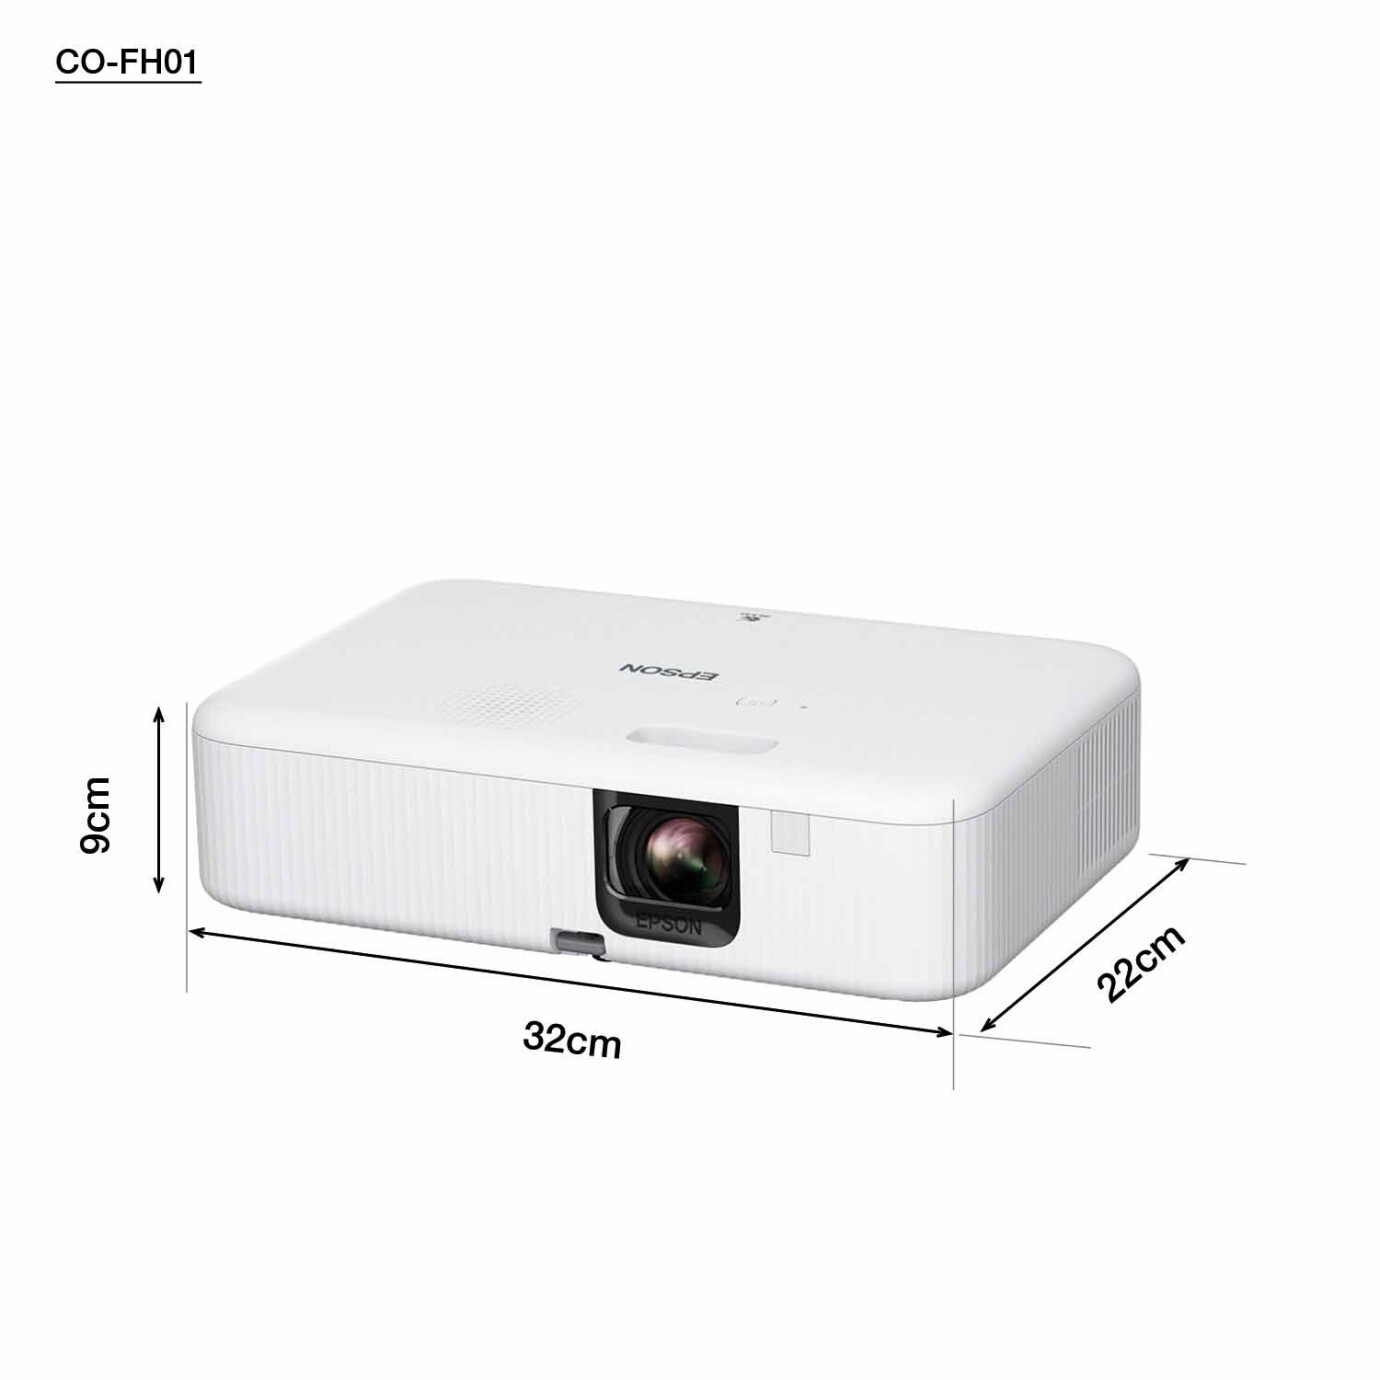 Vorschau: Epson CO-FH01 Kompakter Heimkino Beamer mit 3.000 ANSI Lumen und Full HD